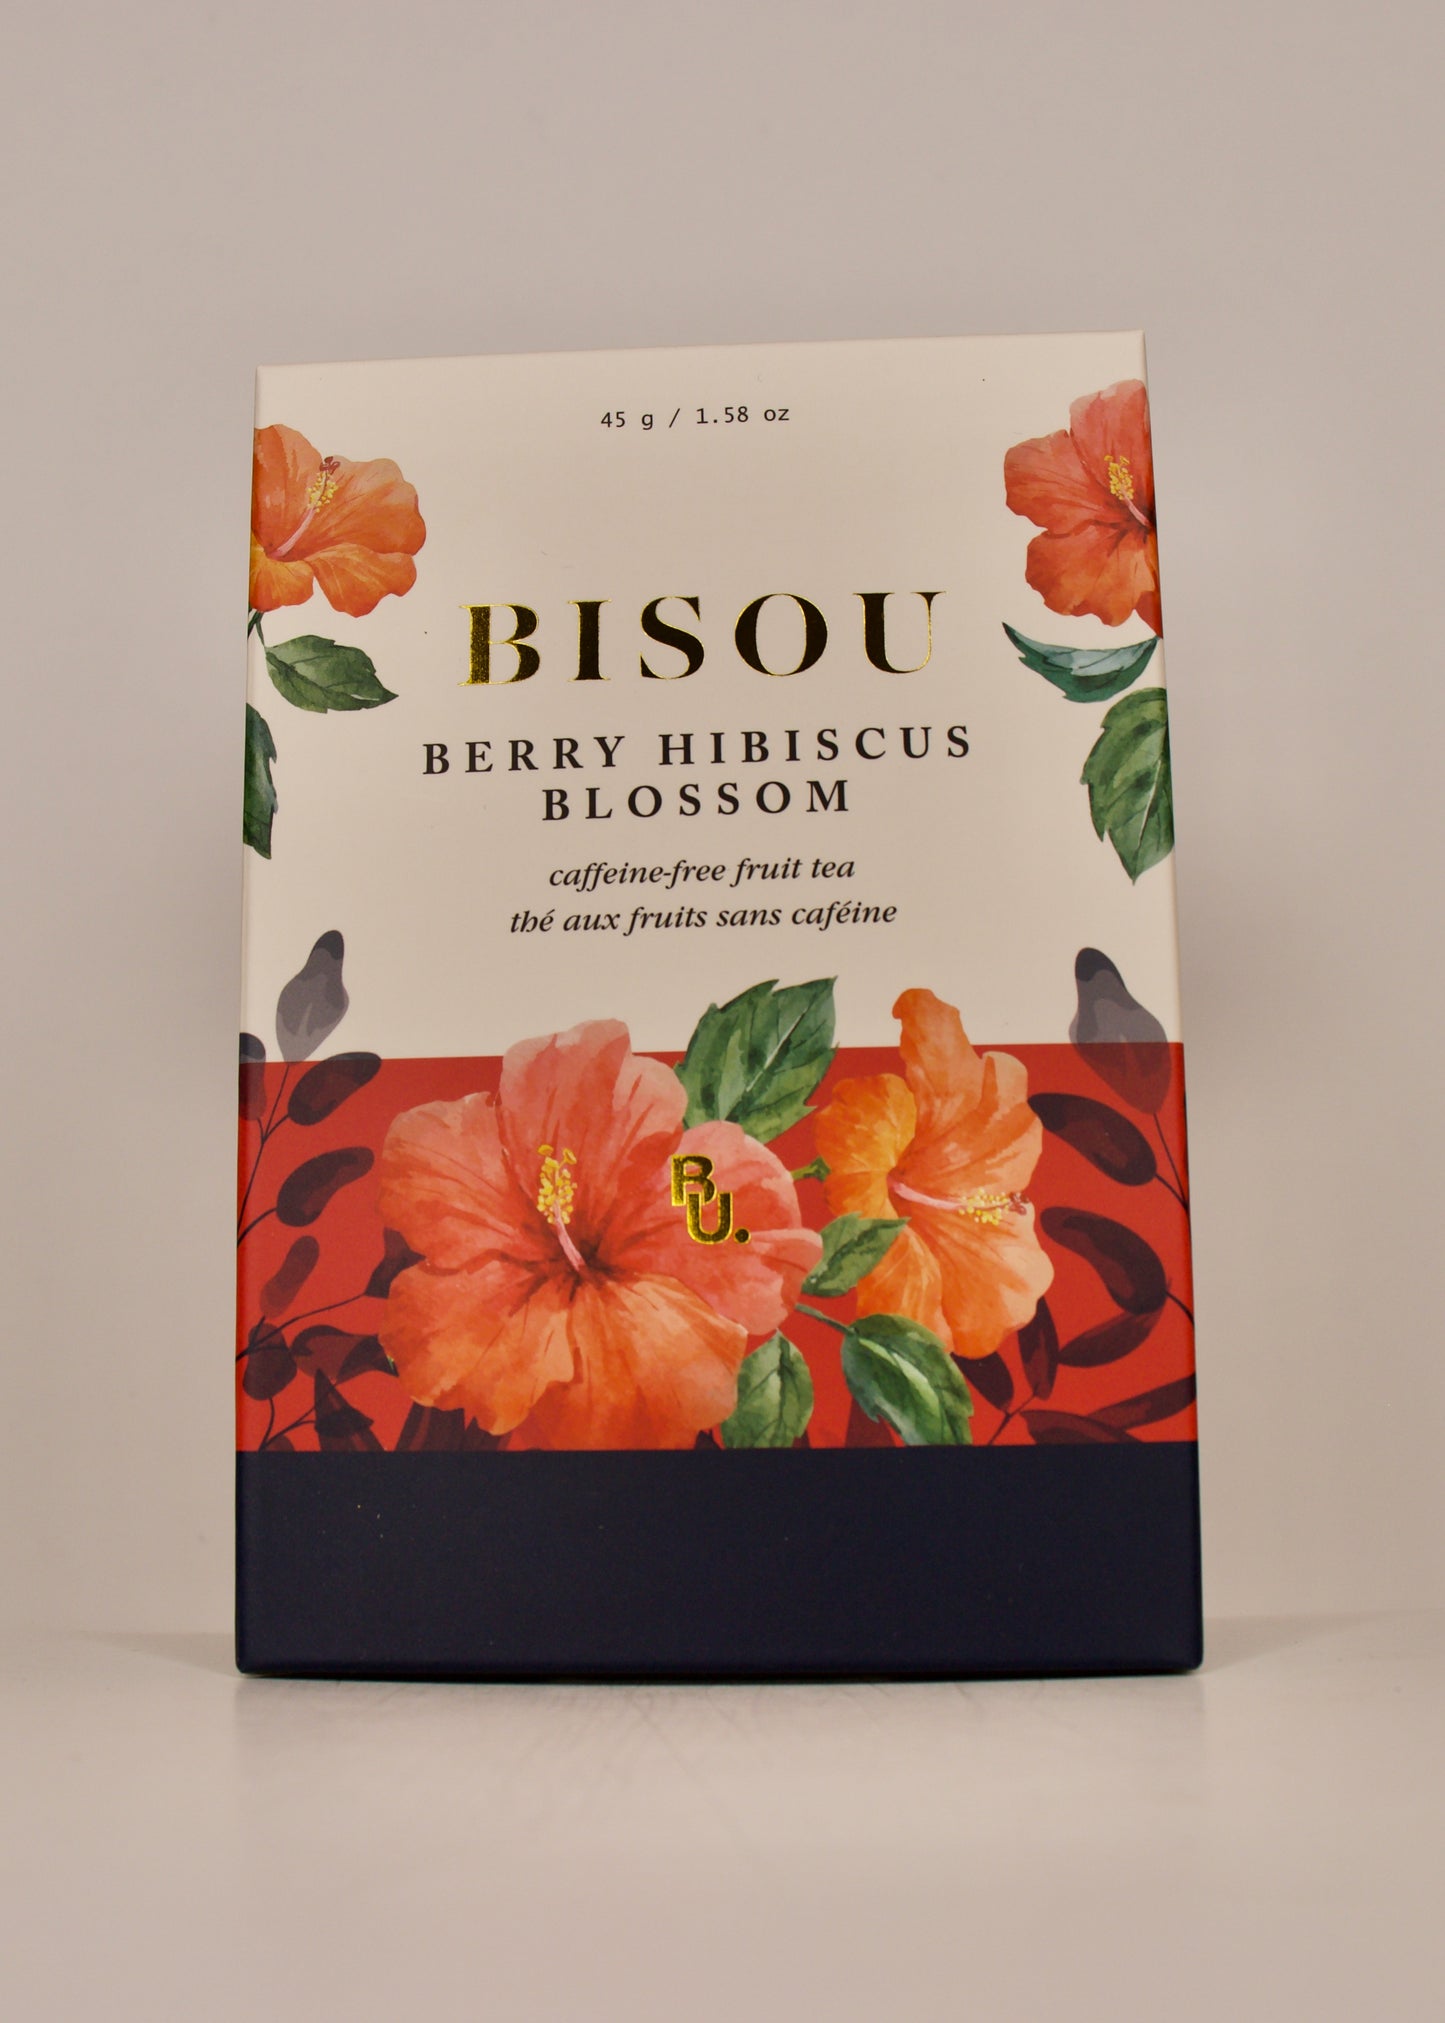 Bisou Berry Hibiscus Blossom Caffeine-Free Fruit Tea 45 g